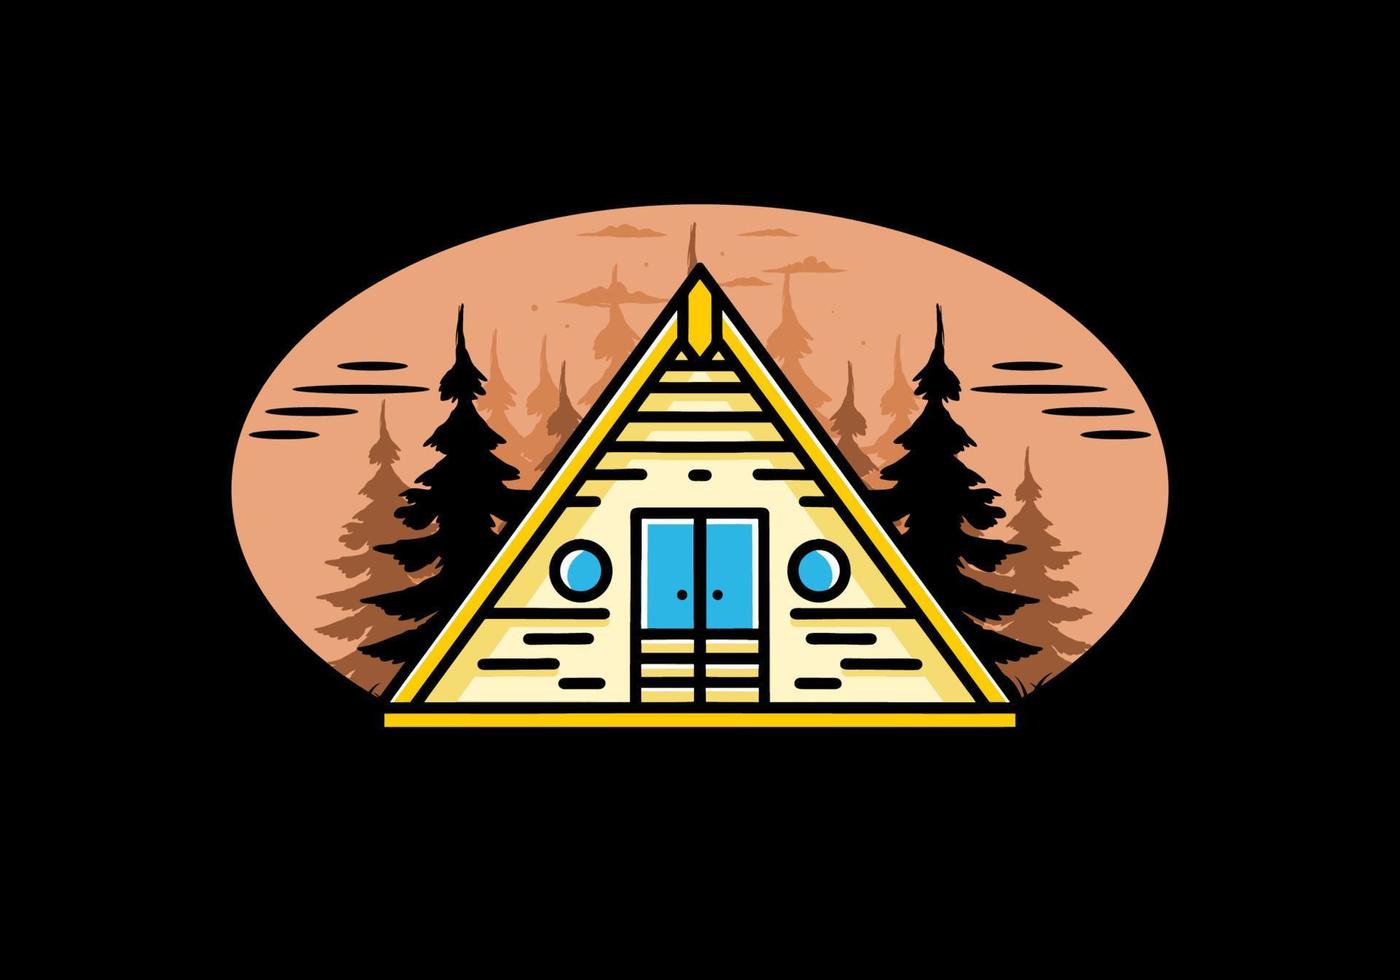 diseño de ilustración de cabaña de madera de triángulo vector